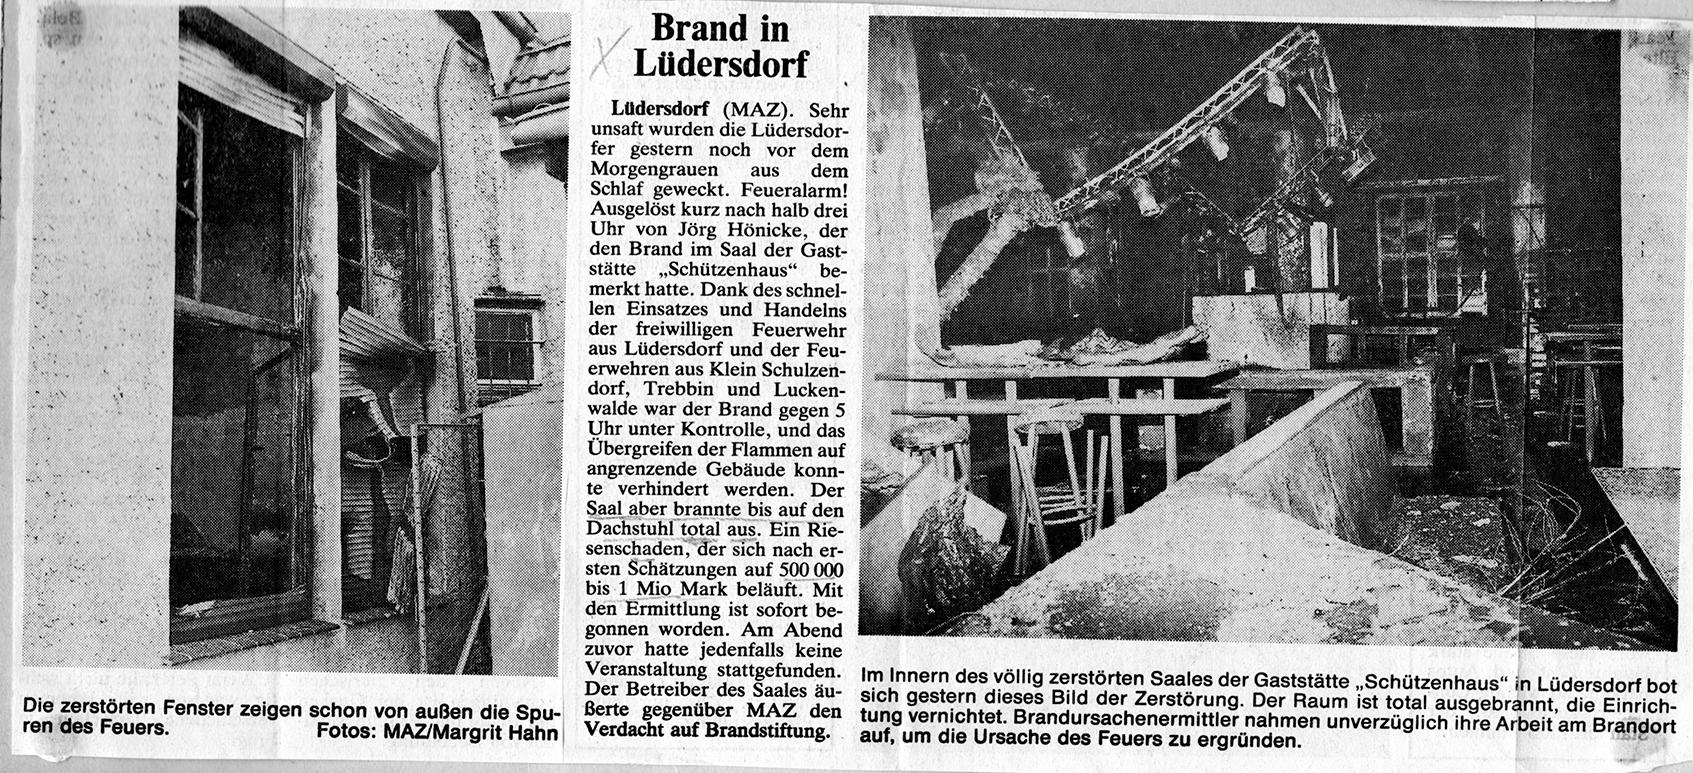 Pressemeldung MAZ 14.07.1992 "Brand in Lüdersdorf" von Margrit Hahn